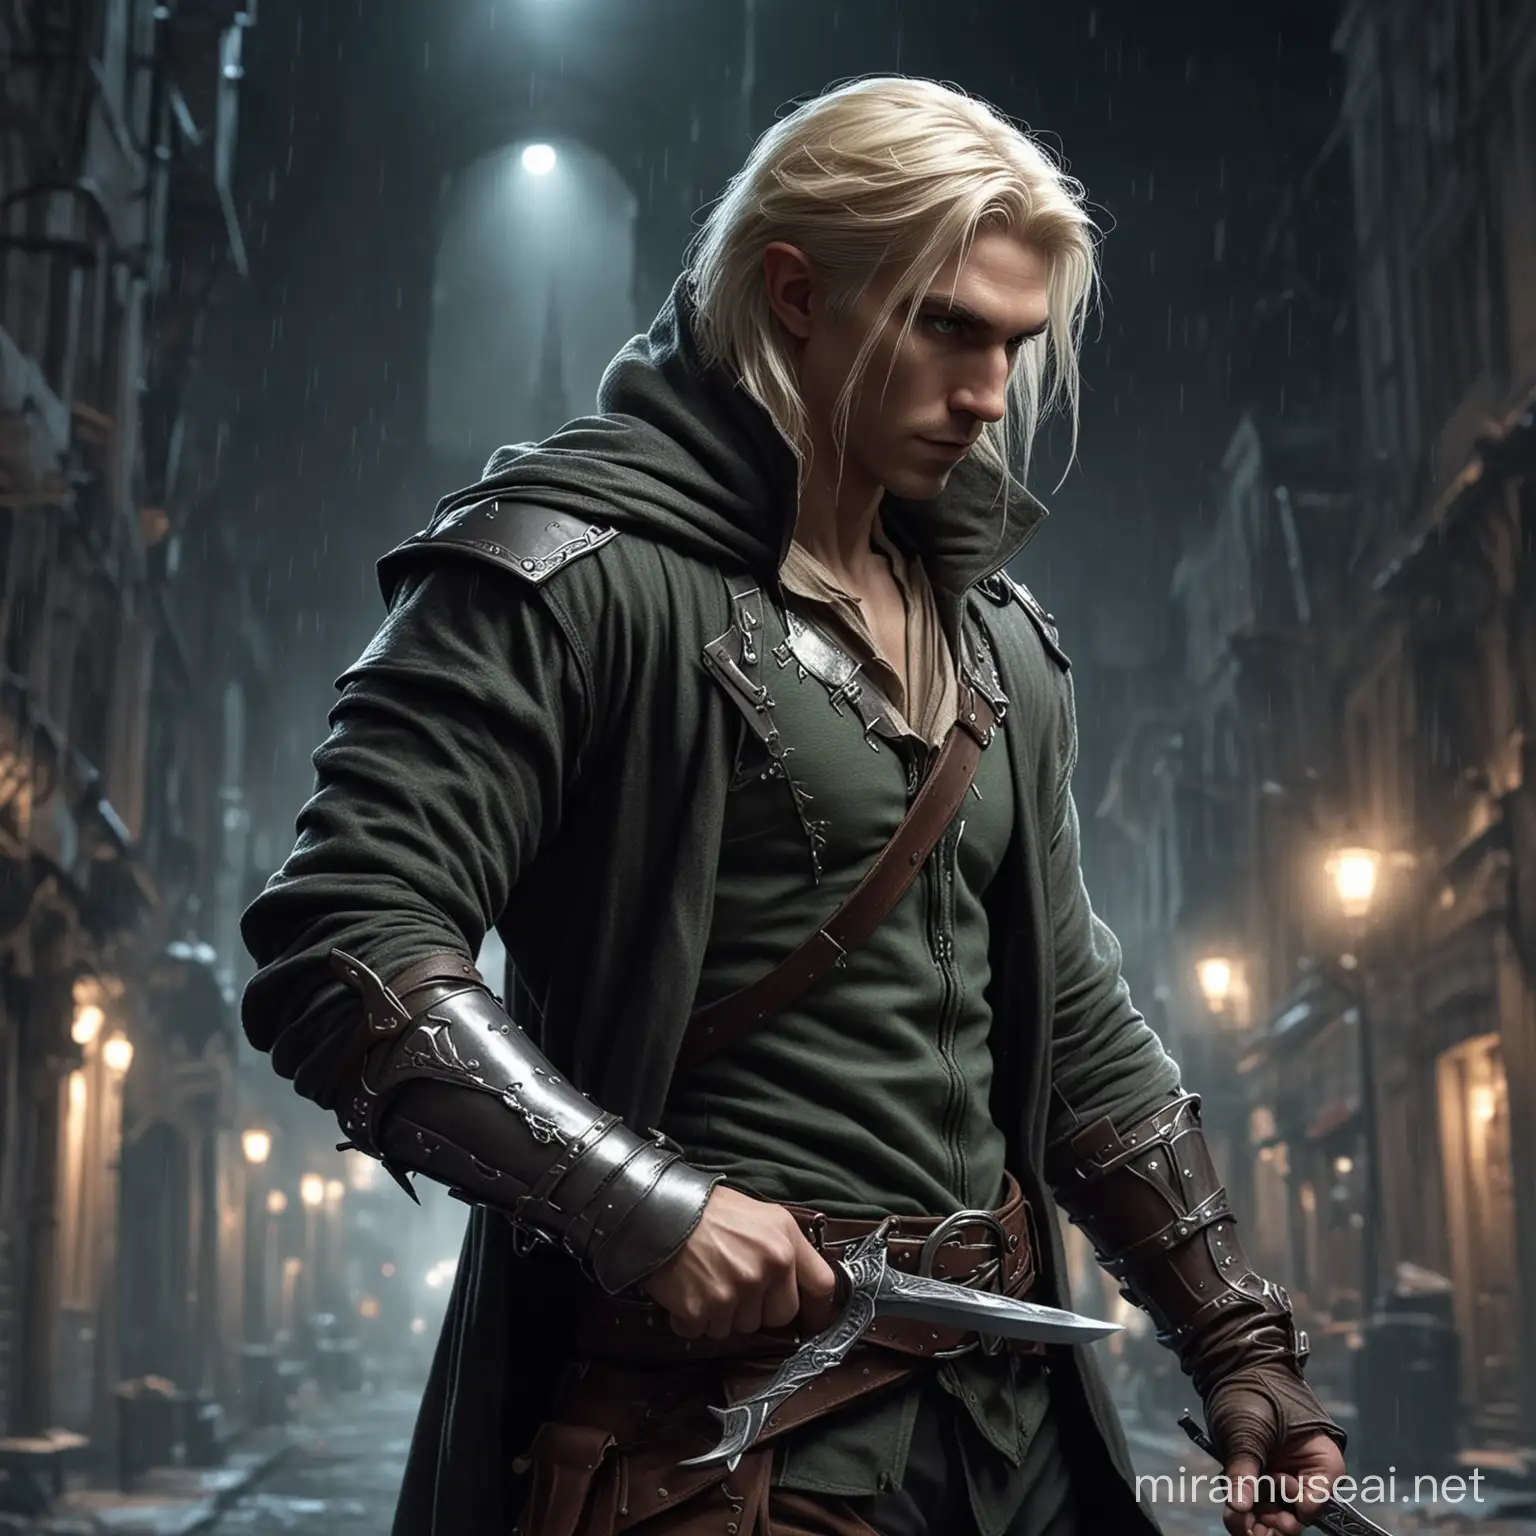 блондин эльф-разбойник-мужчина с  волосами, спрятанными в капюшон совершает кражу ночью в фентези городе держа в руке клинок